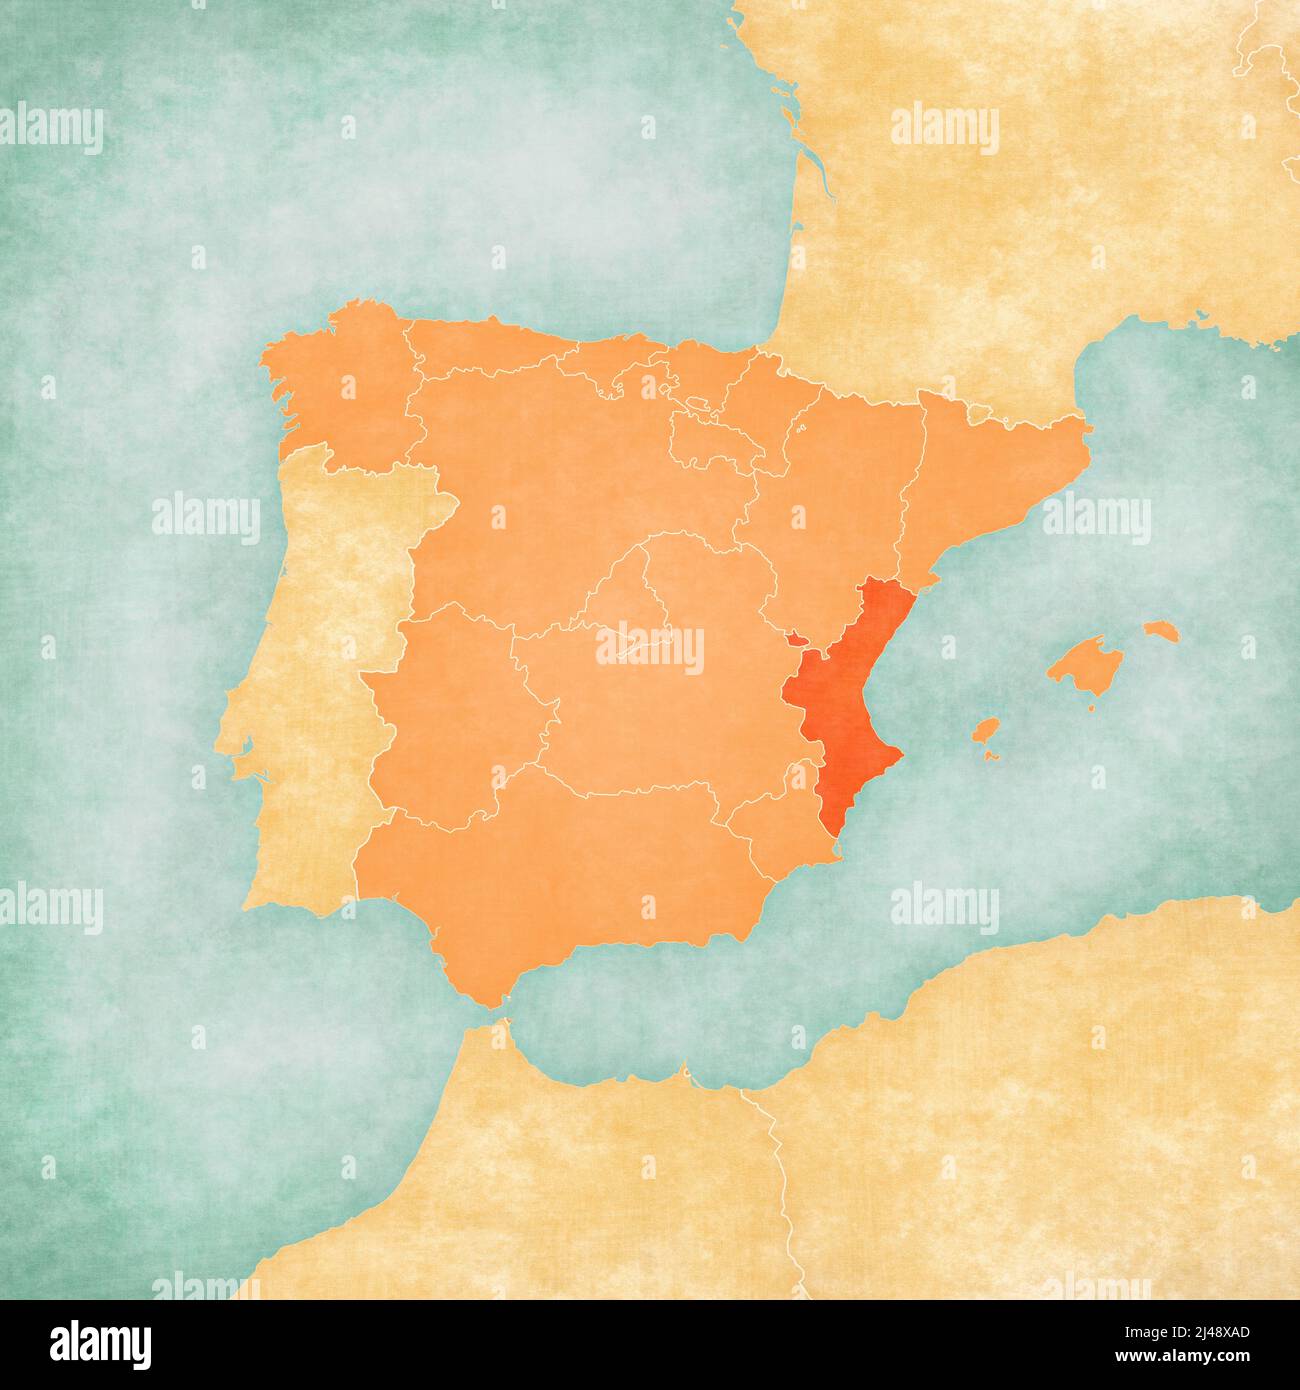 Communauté Valencienne (Espagne) sur la carte de la péninsule ibérique en grunge douce et de style vintage sur le vieux papier. Banque D'Images